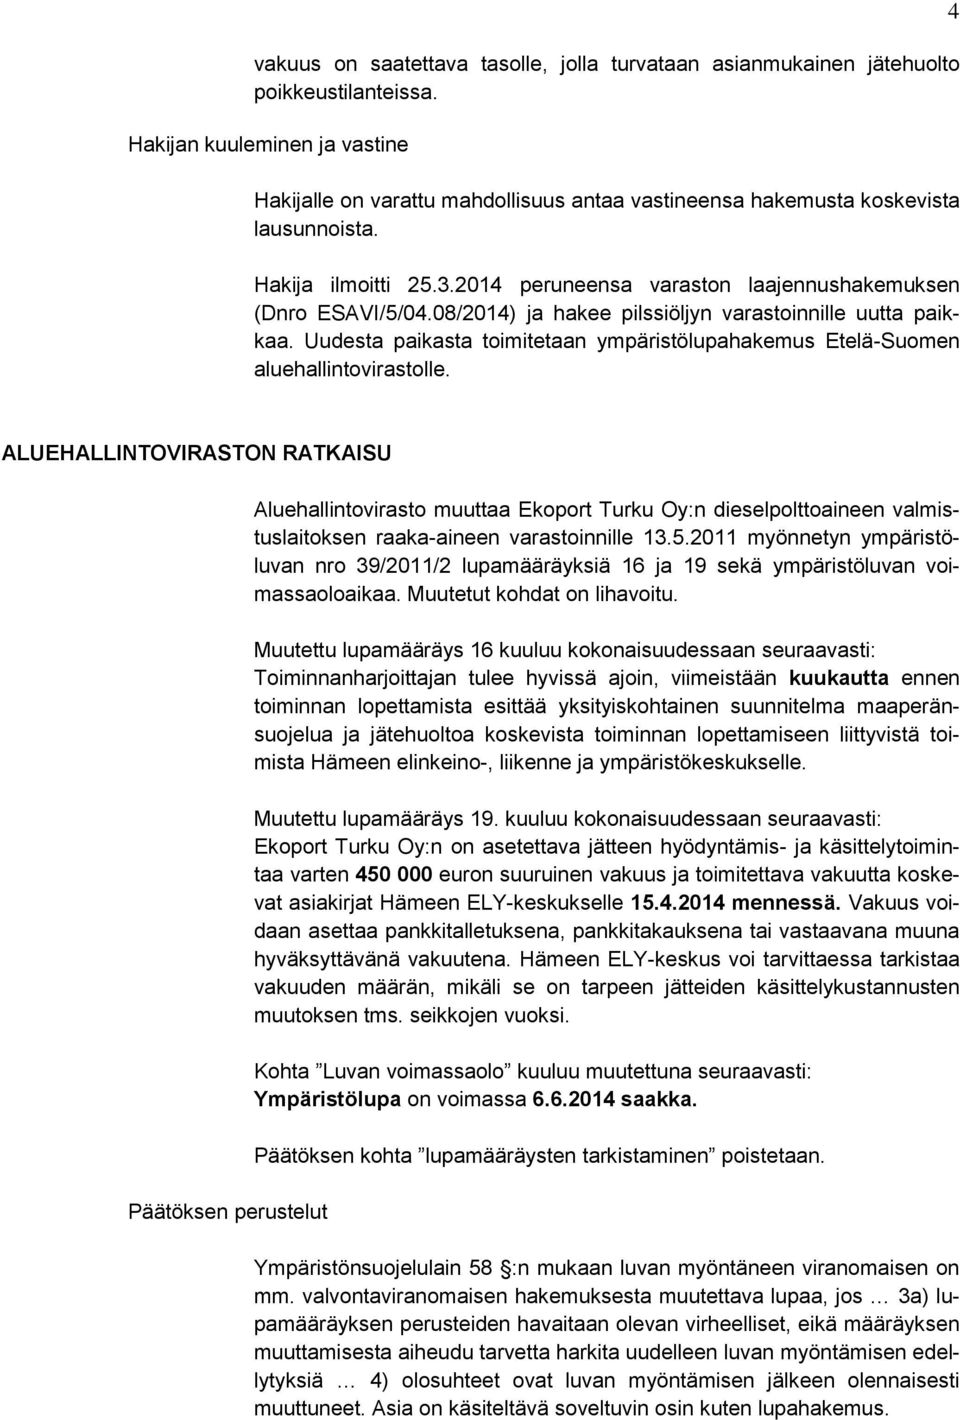 08/2014) ja hakee pilssiöljyn varastoinnille uutta paikkaa. Uudesta paikasta toimitetaan ympäristölupahakemus Etelä-Suomen aluehallintovirastolle.